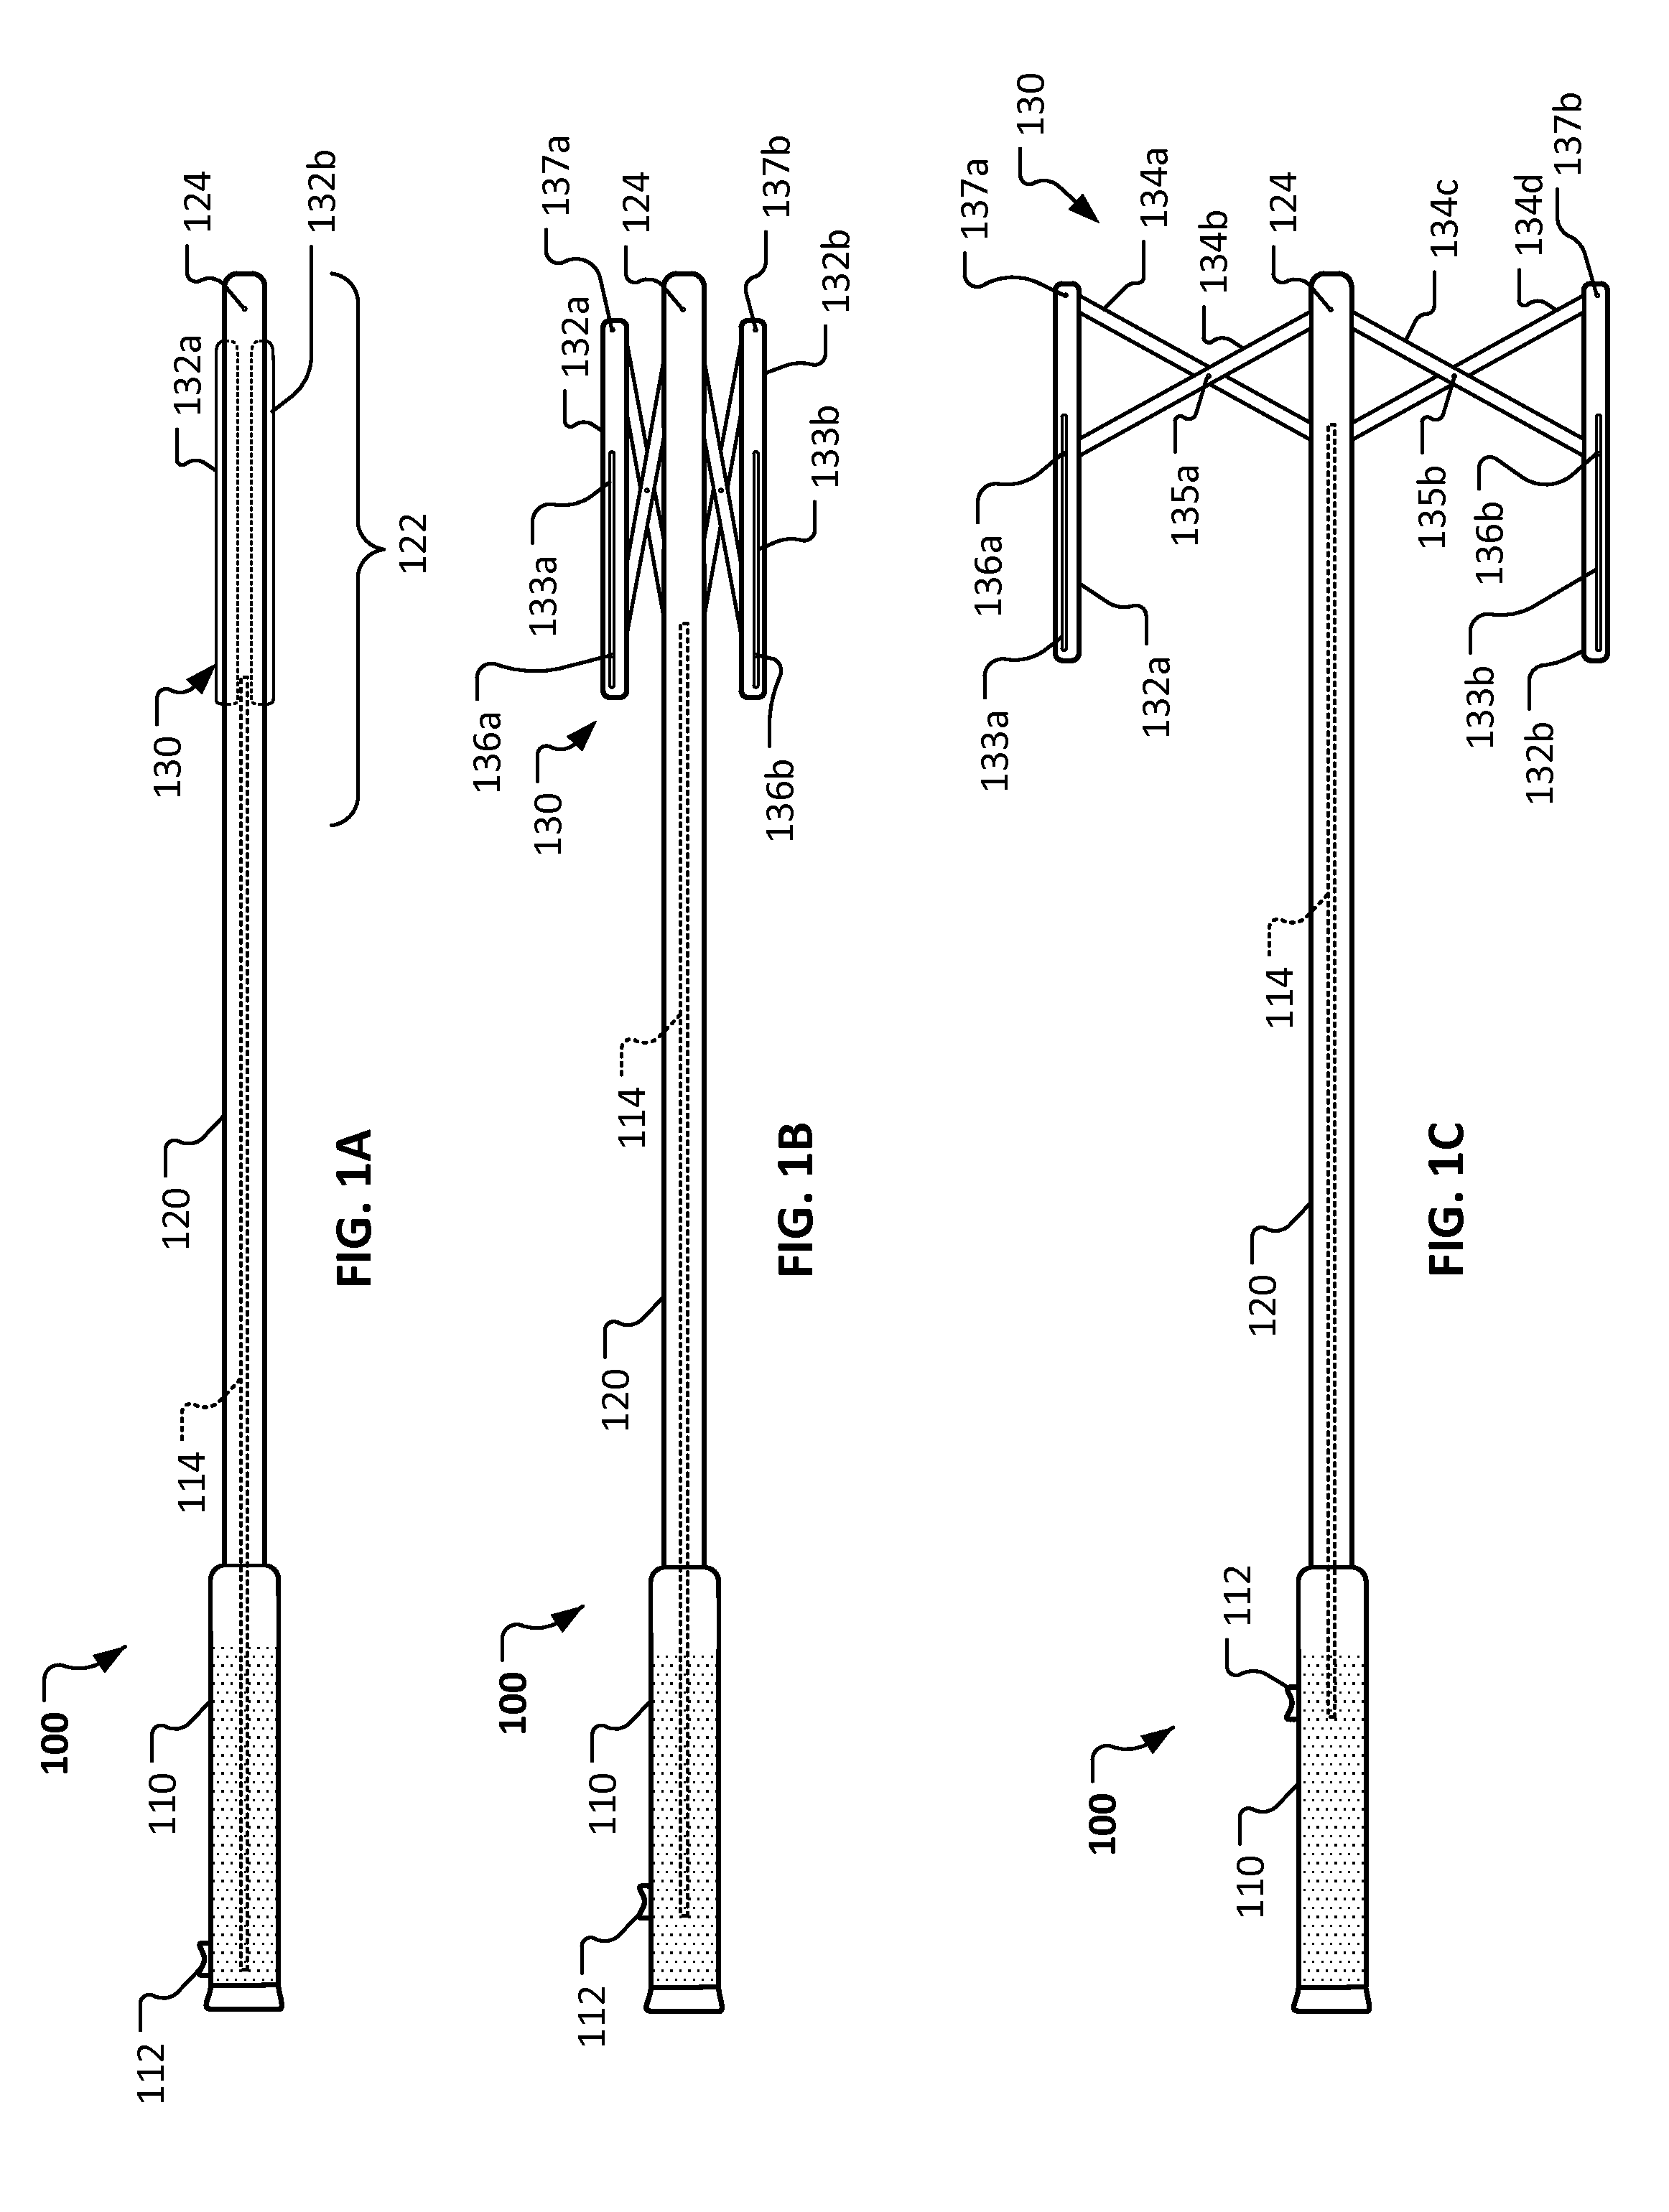 Laparoscopic retractor devices